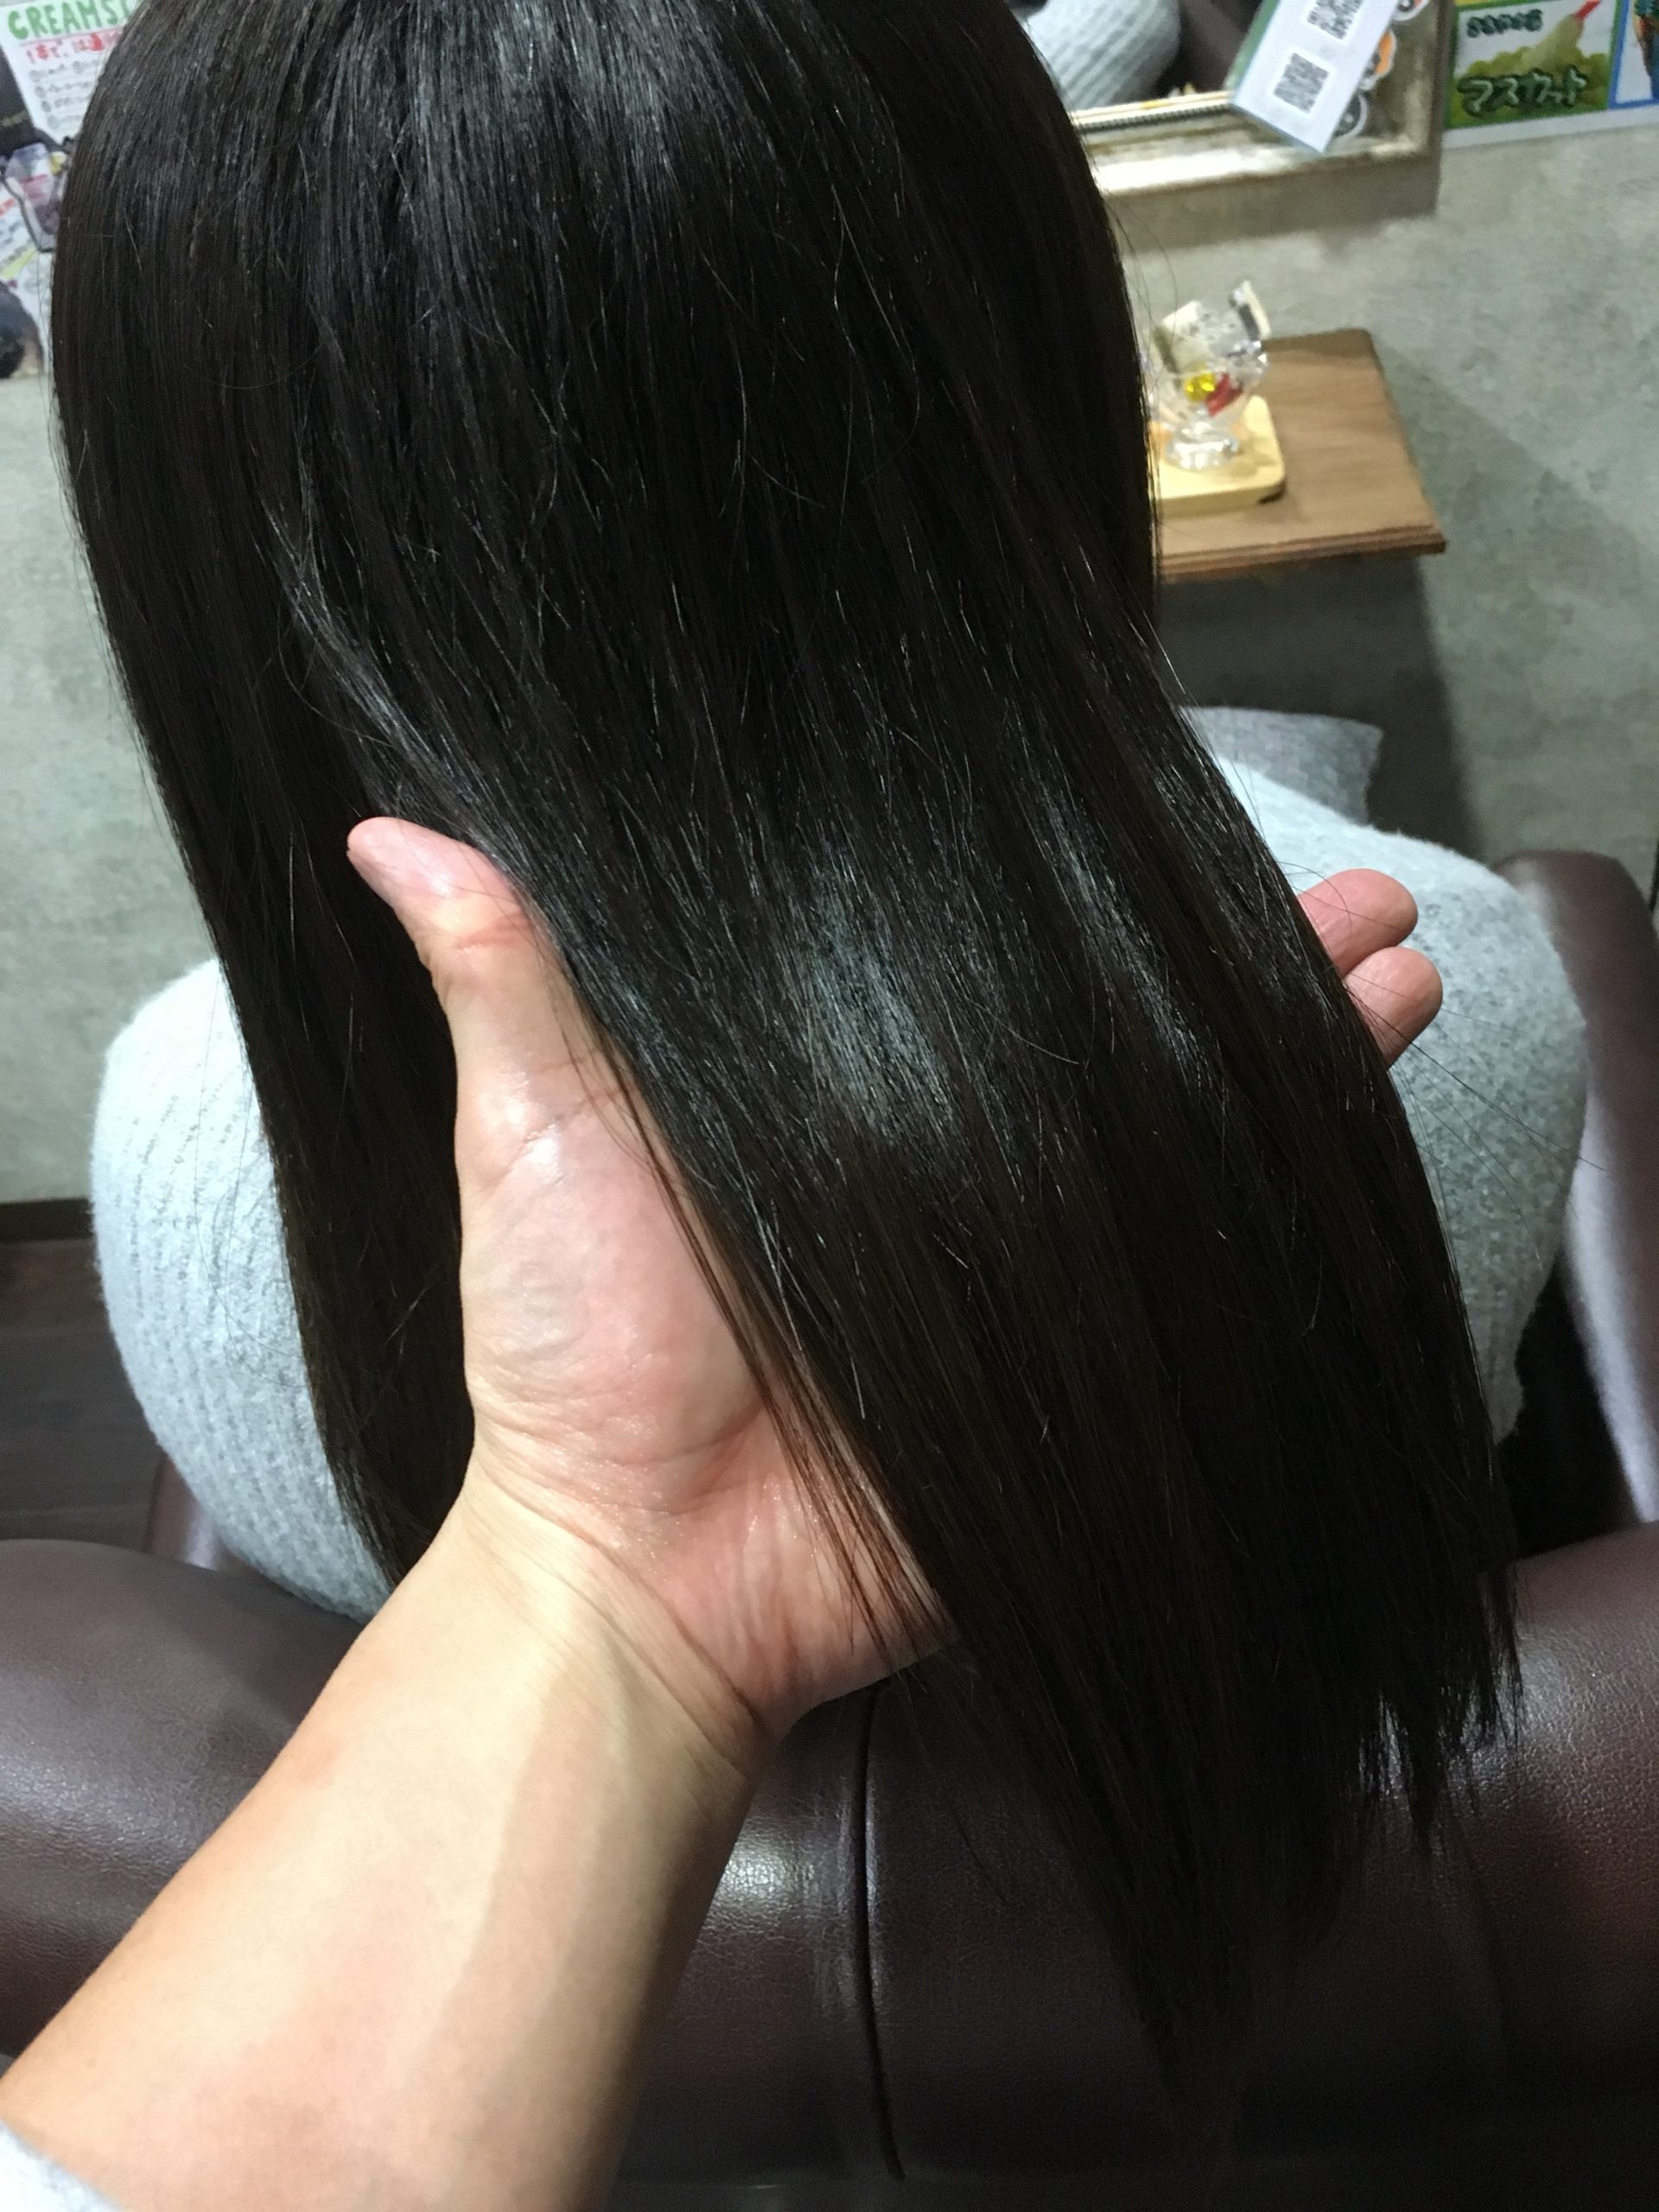 量が多く 髪が太い女子高生のお客様の髪を縮毛矯正でサラサラヘアー 大阪で縮毛矯正が人気の美容室 Charm Hair Resort